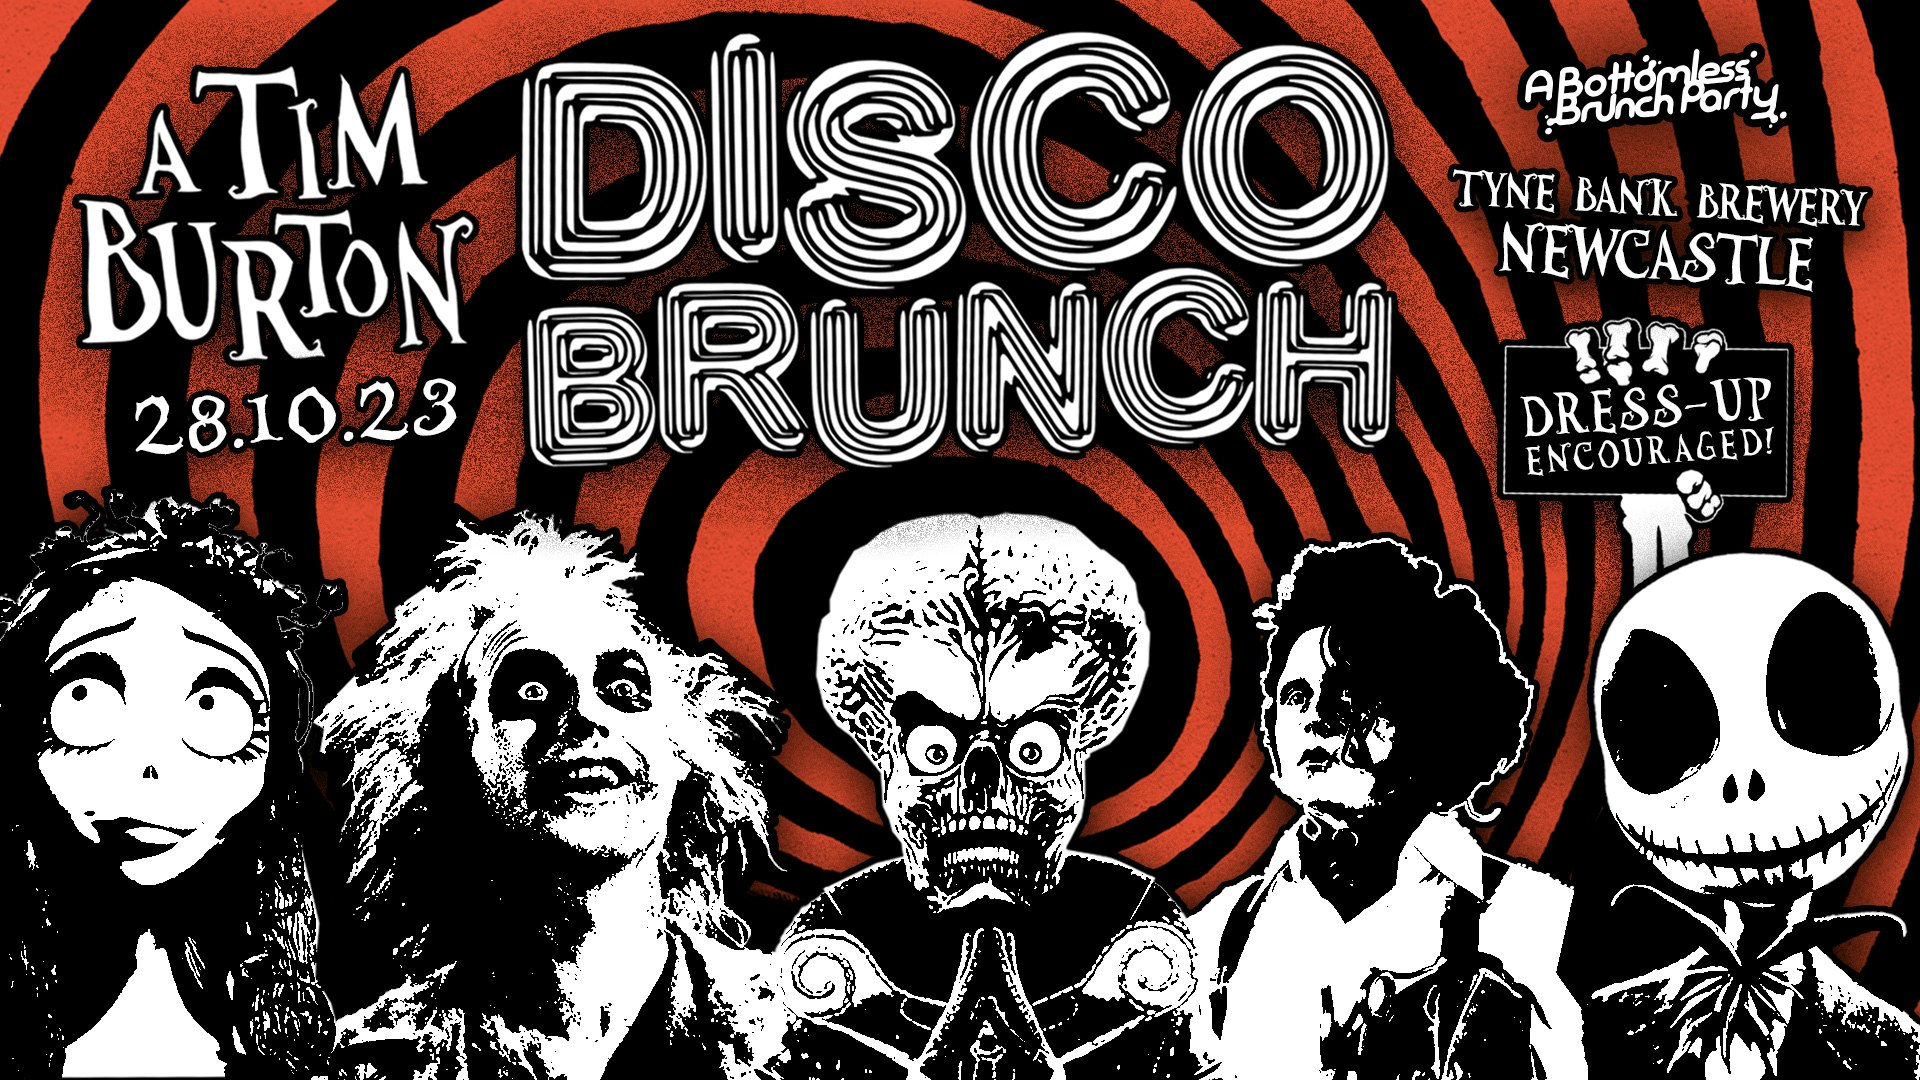 ‘A Bottomless Brunch Party’ | A Tim Burton Disco Brunch